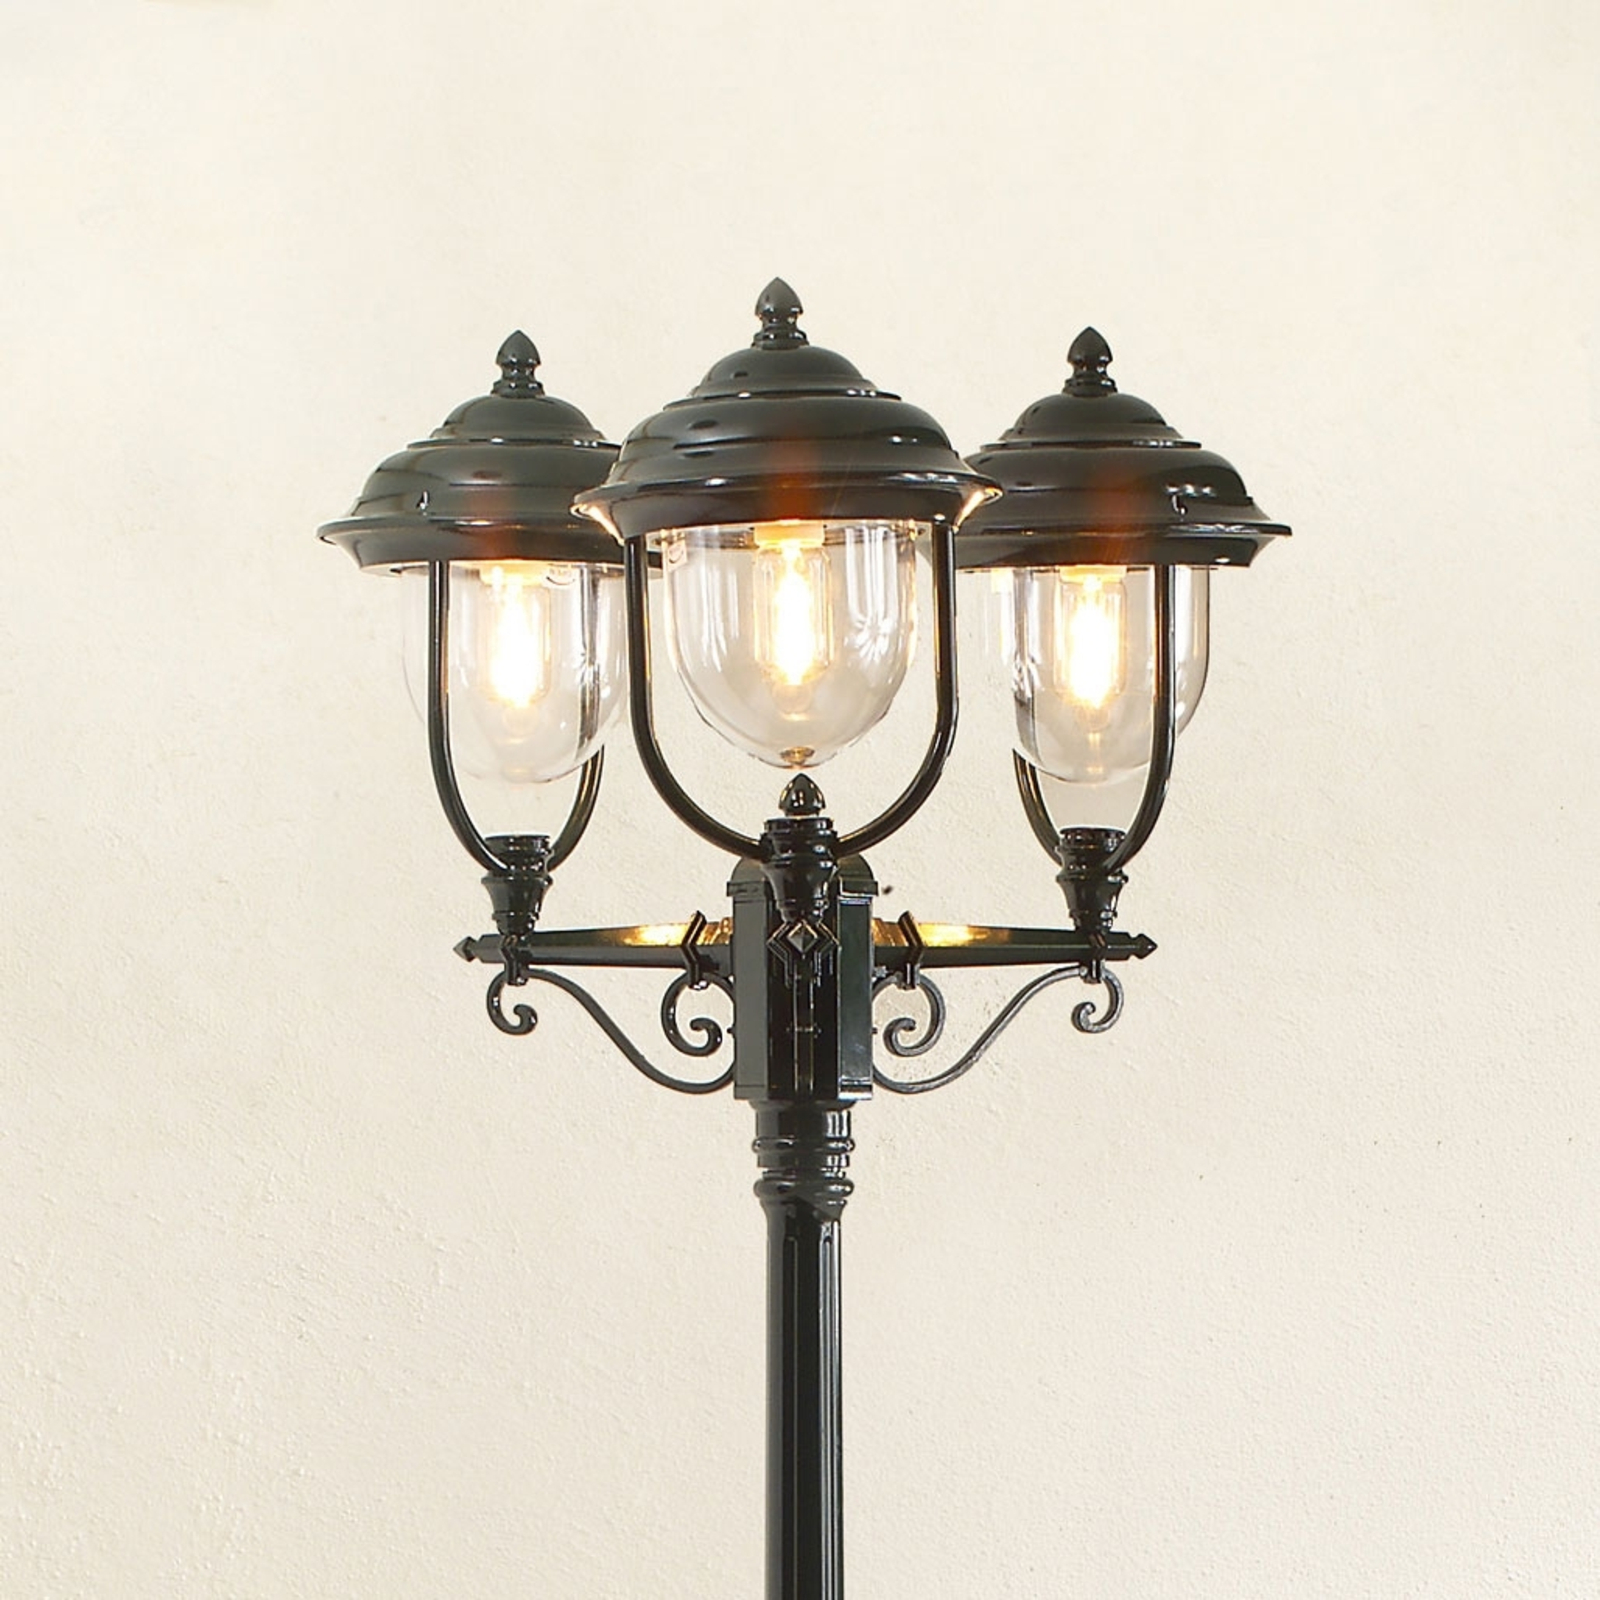 Parma lamp post 3-bulb in green